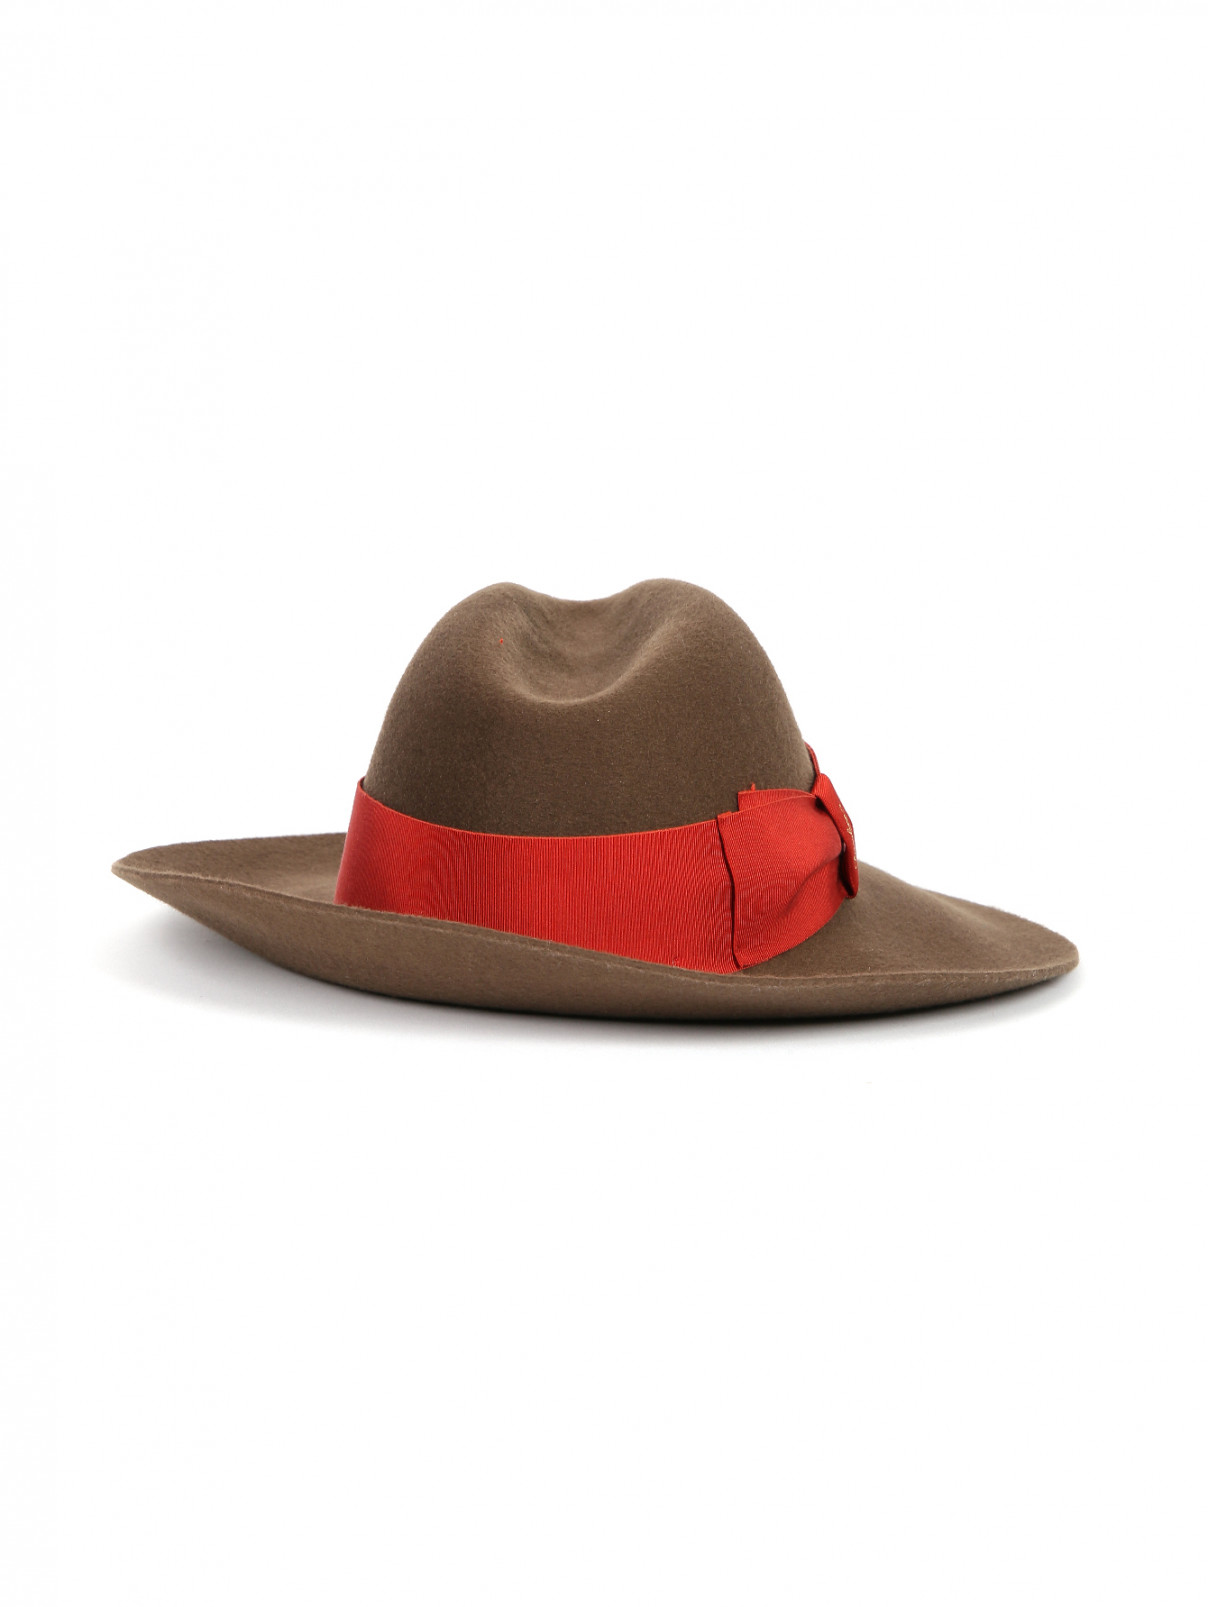 Шляпа шерстяная декорированная репсовой лентой Borsalino  –  Обтравка2  – Цвет:  Коричневый